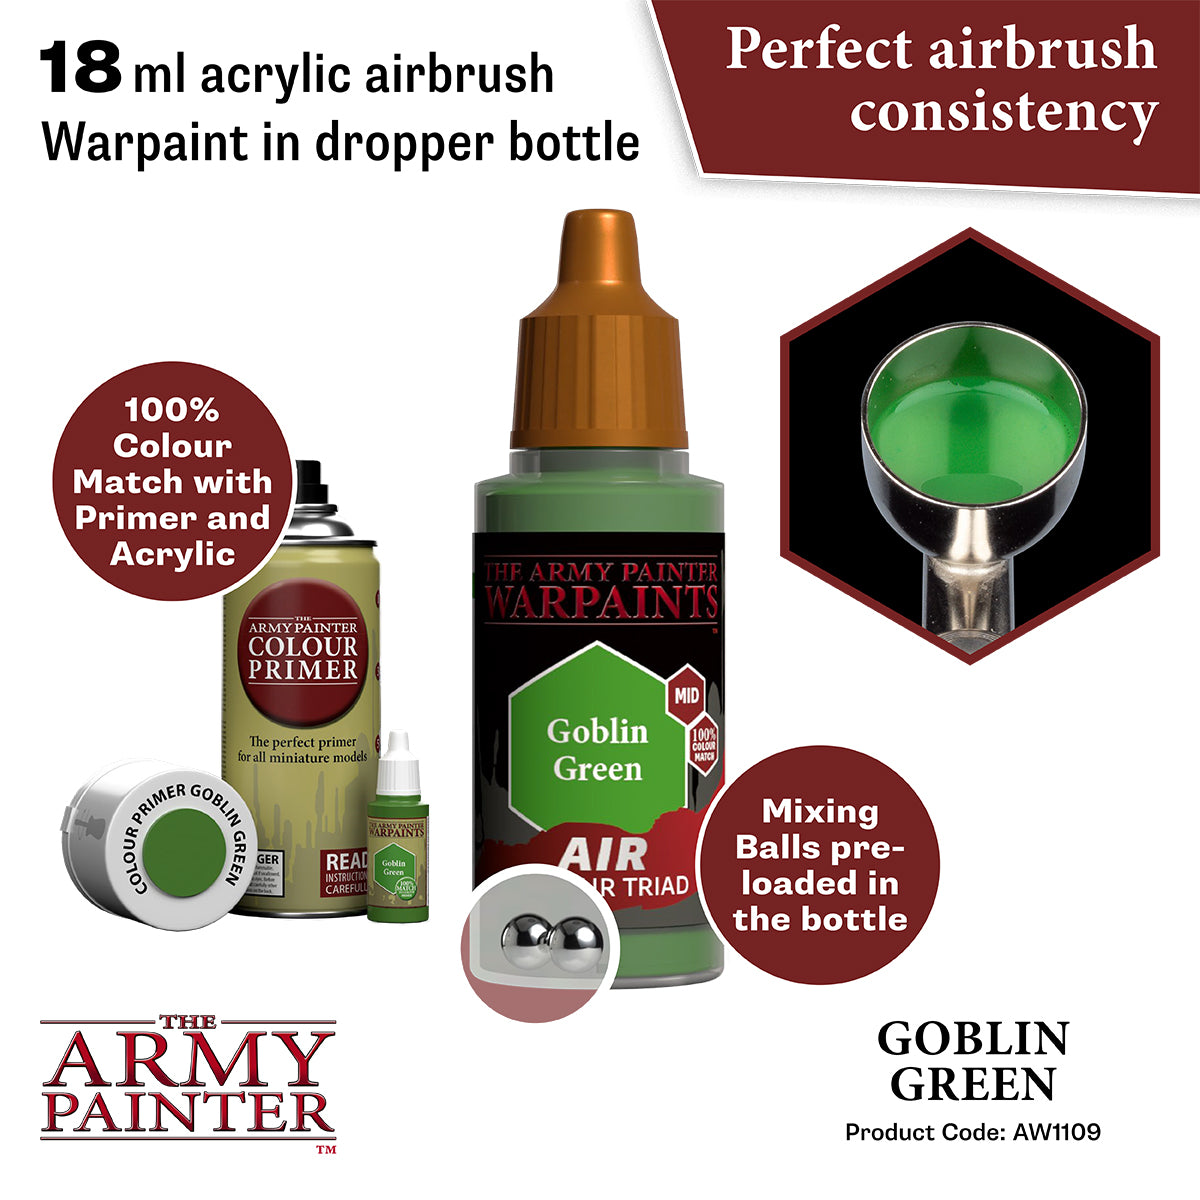 Goblin Green Air Paint